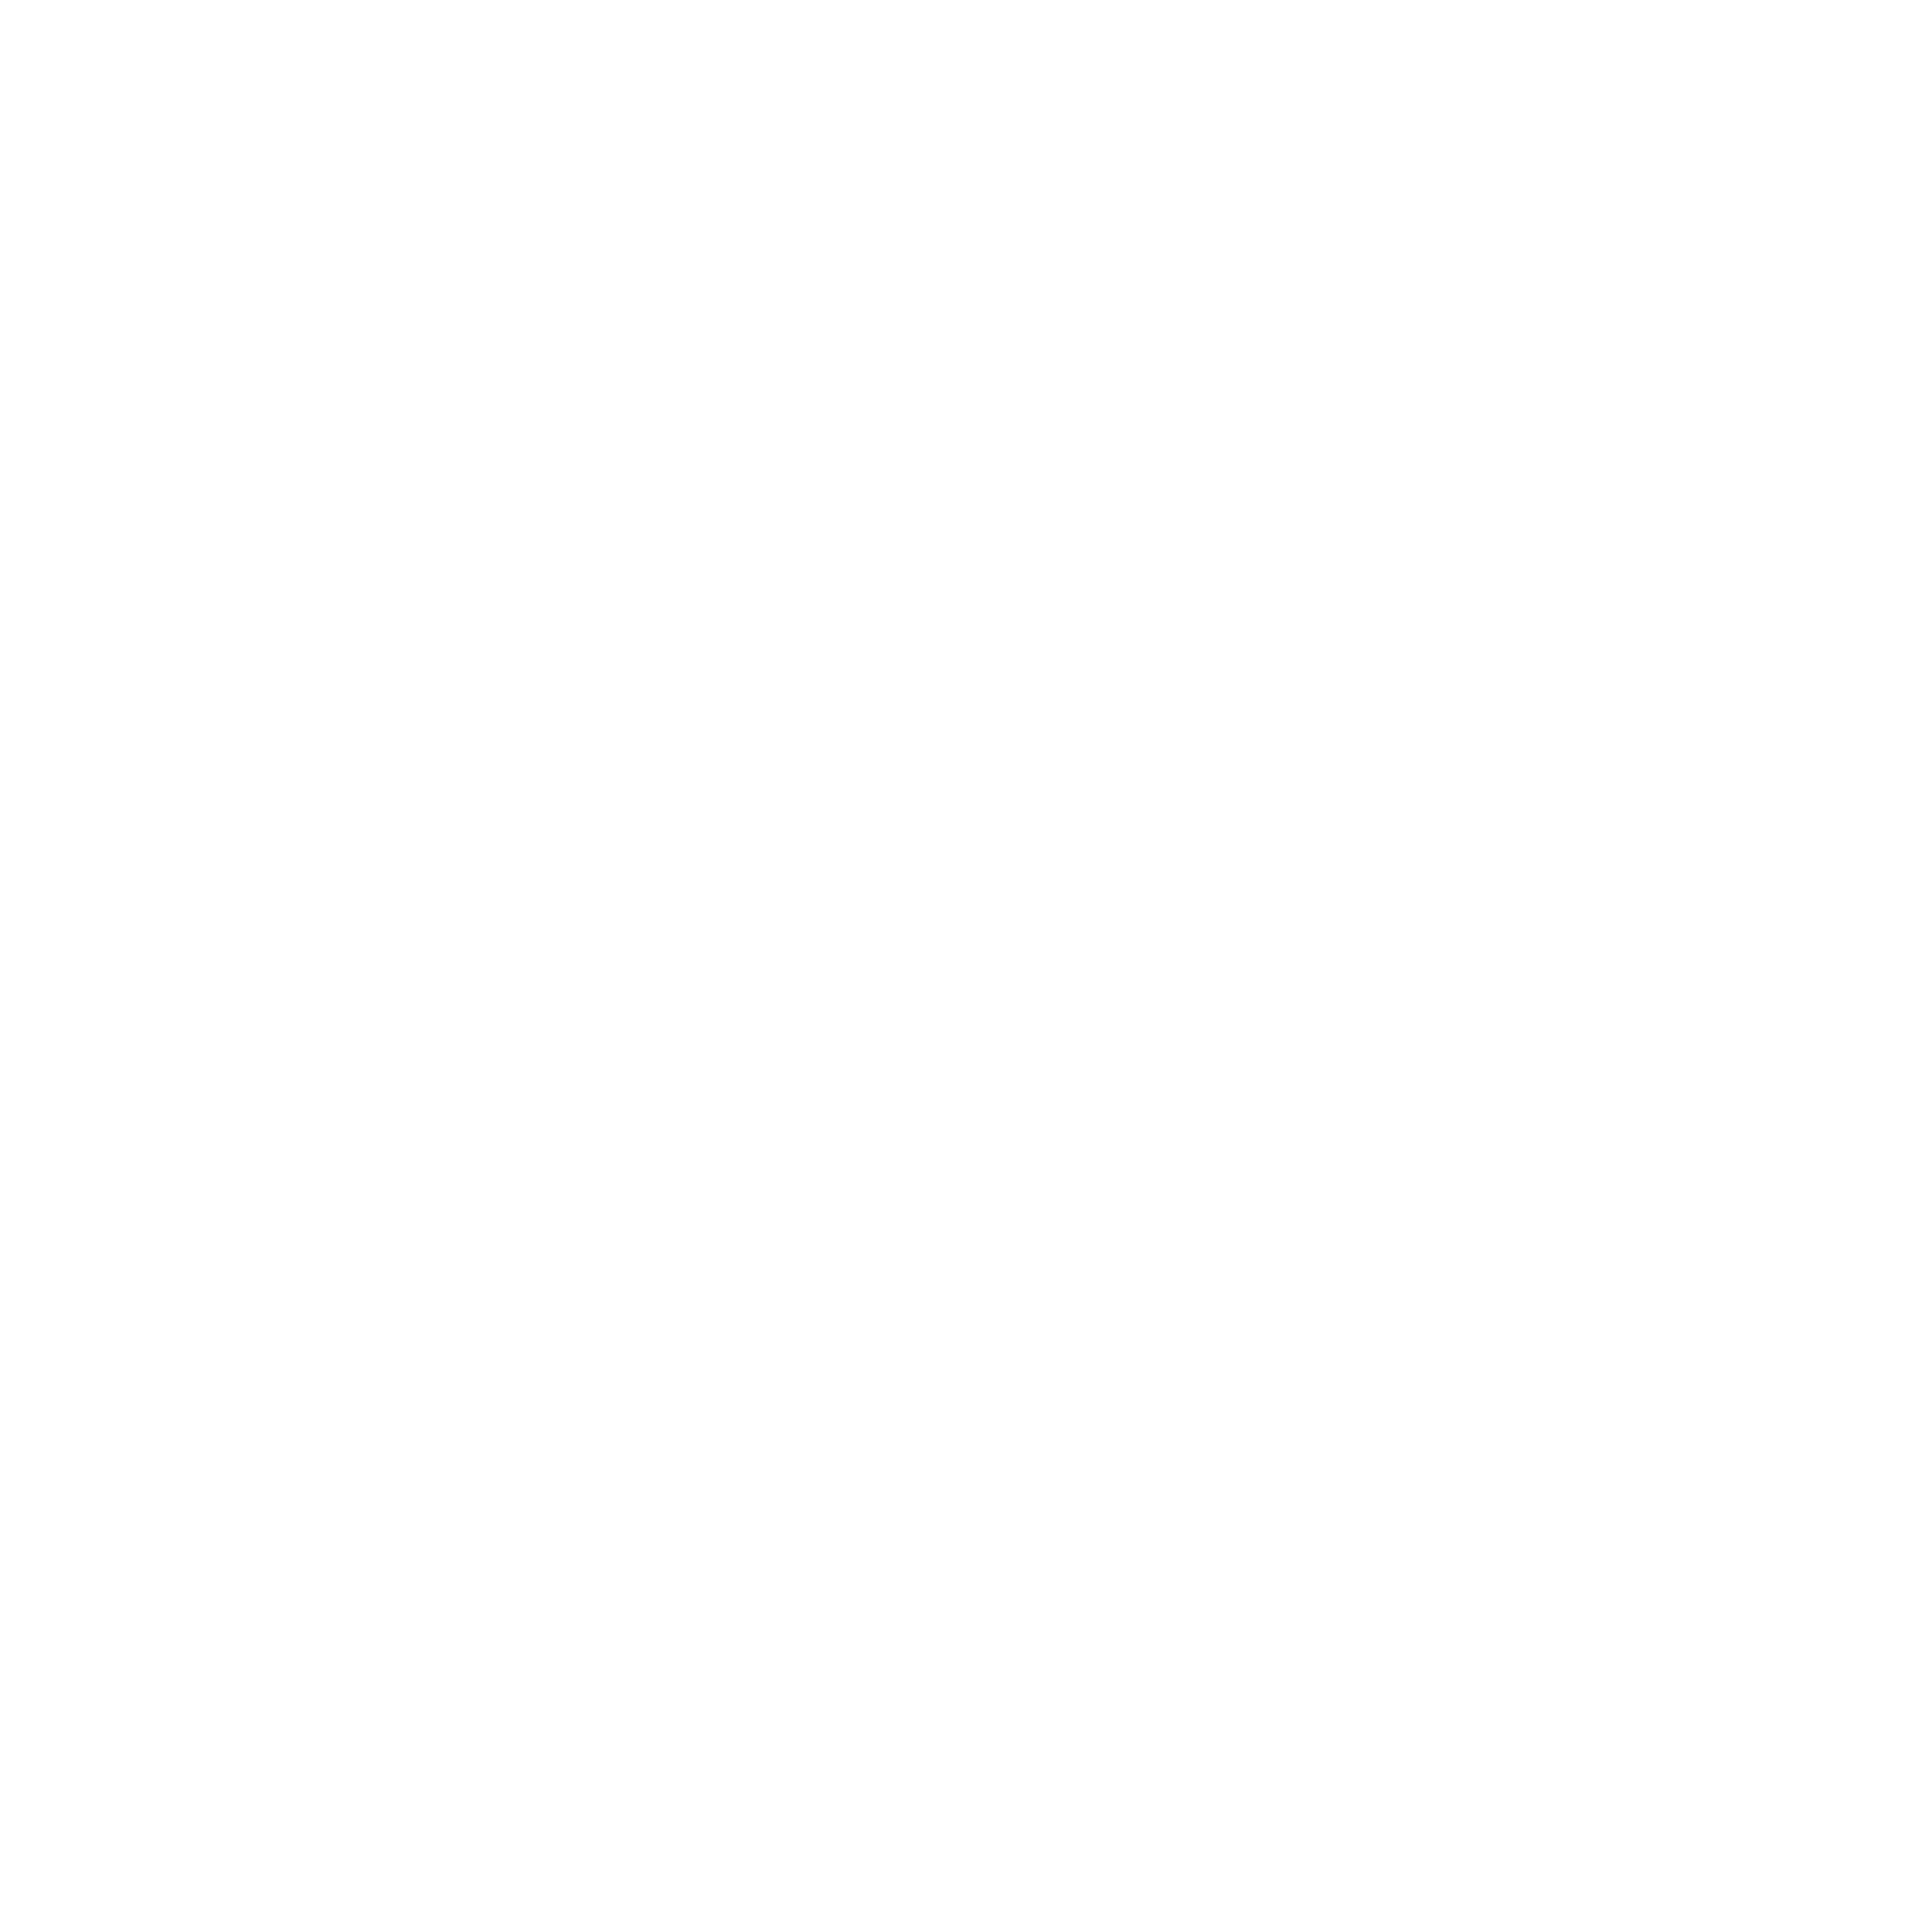 Velocity Smart Technology